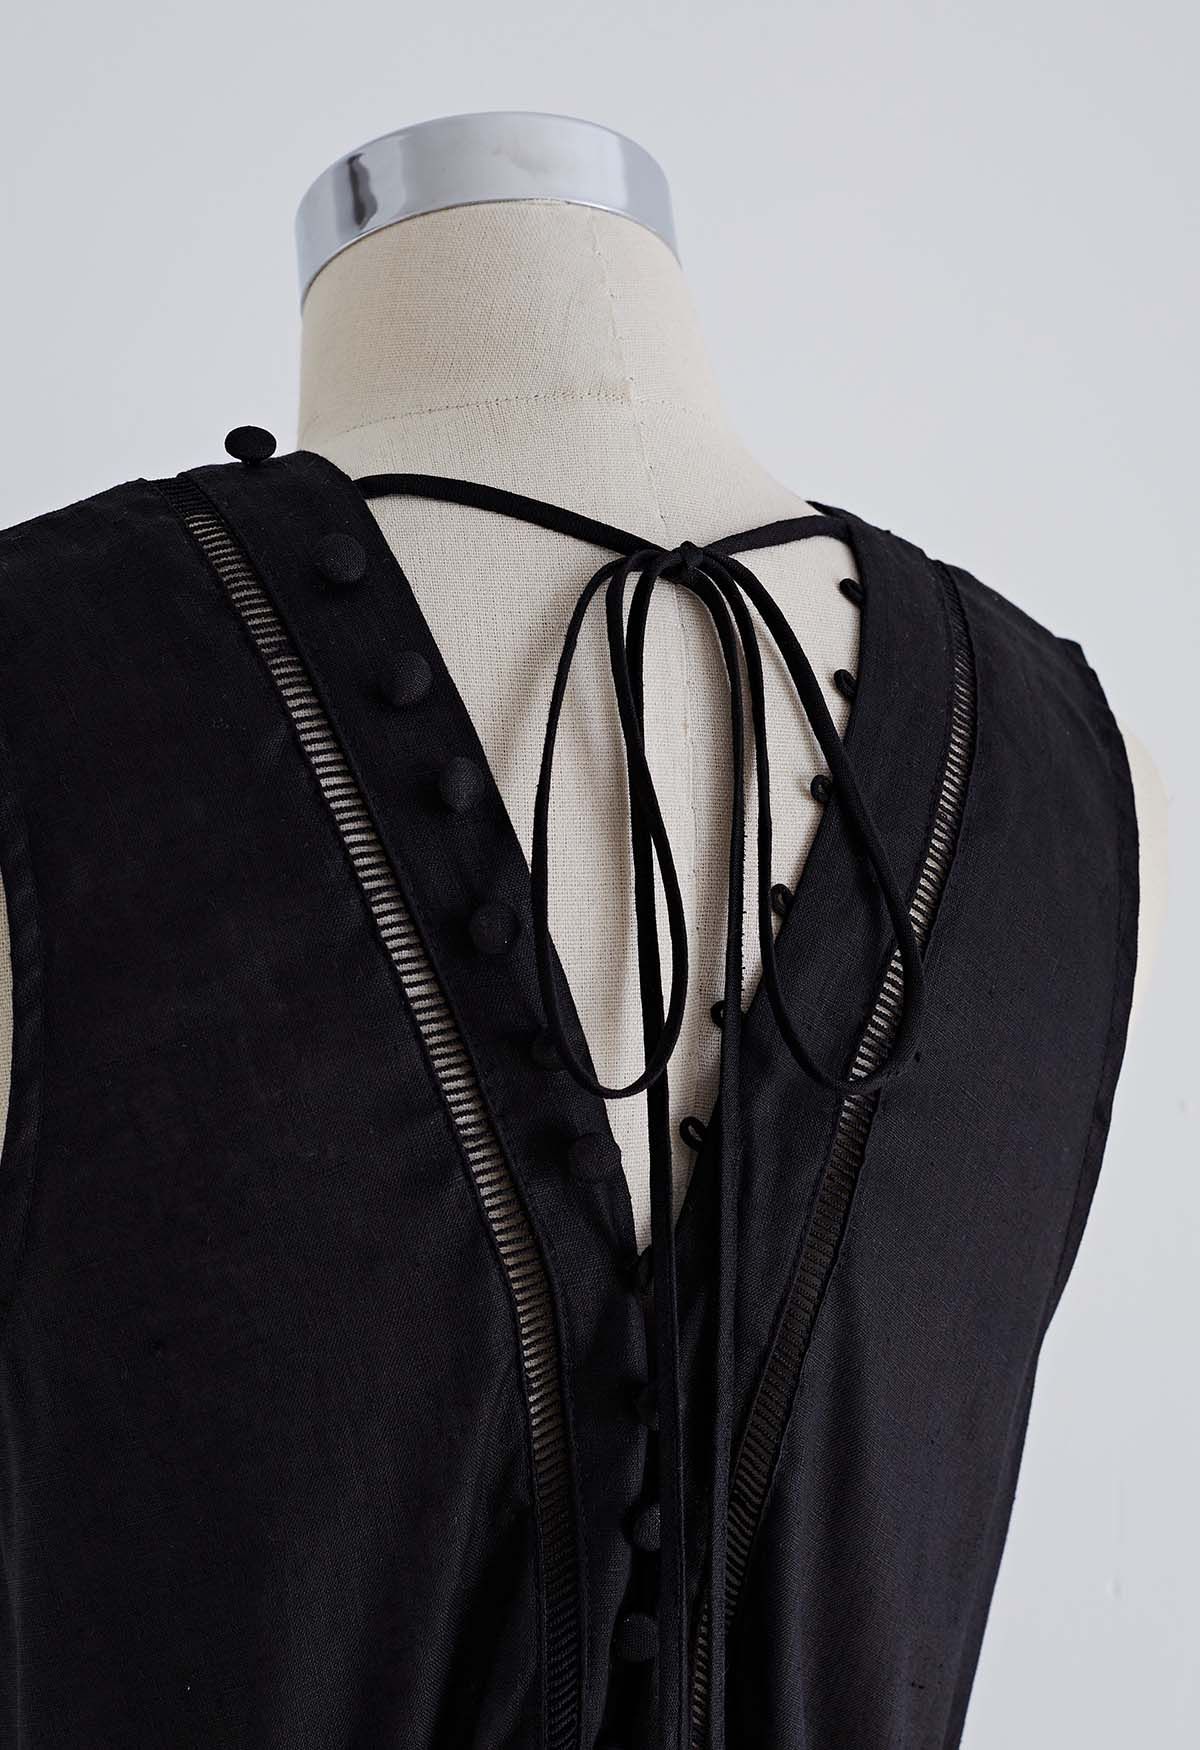 V-Neck Buttoned Sleeveless Dress in Black